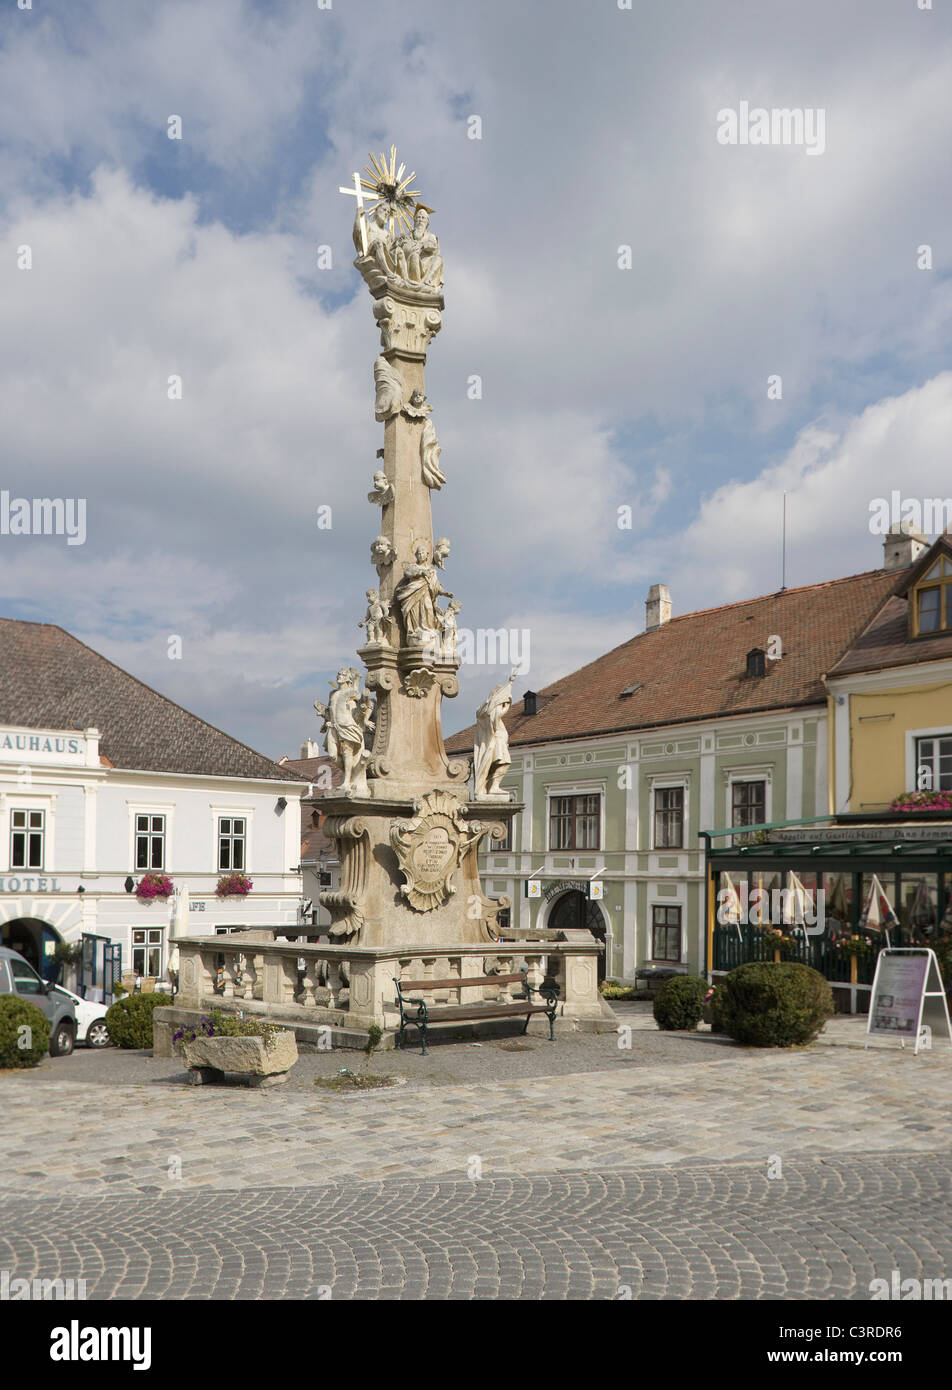 Austria, Weitra, Trinity Column religious statue Stock Photo